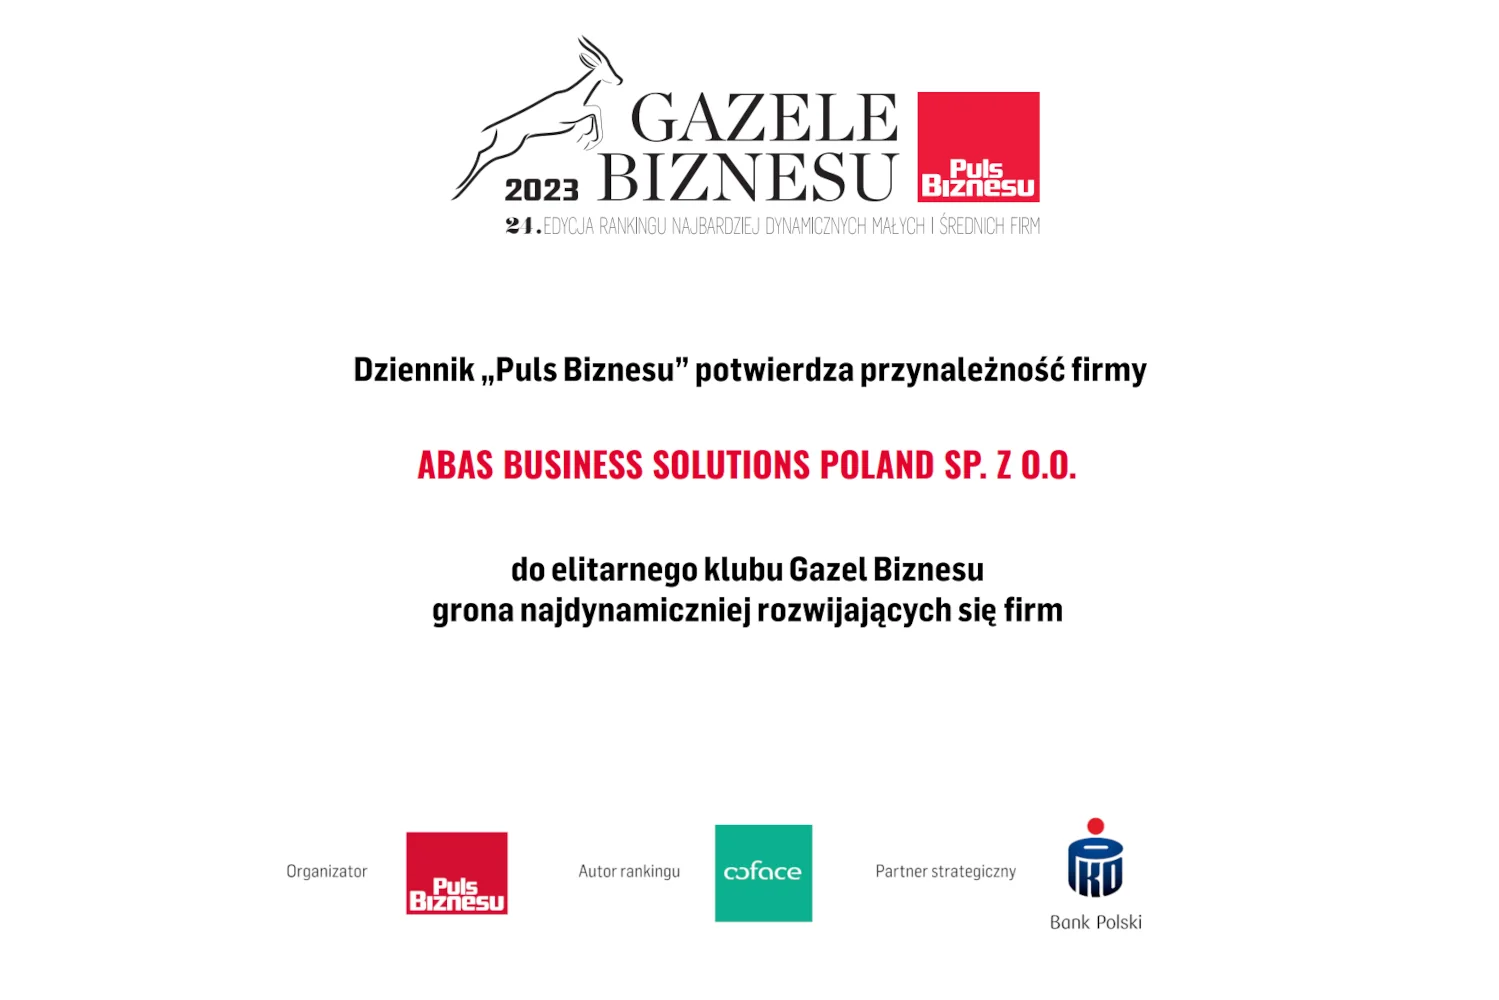 abas Business Solutions Poland uhonorowane prestiżowym tytułem Gazele Biznesu 2023